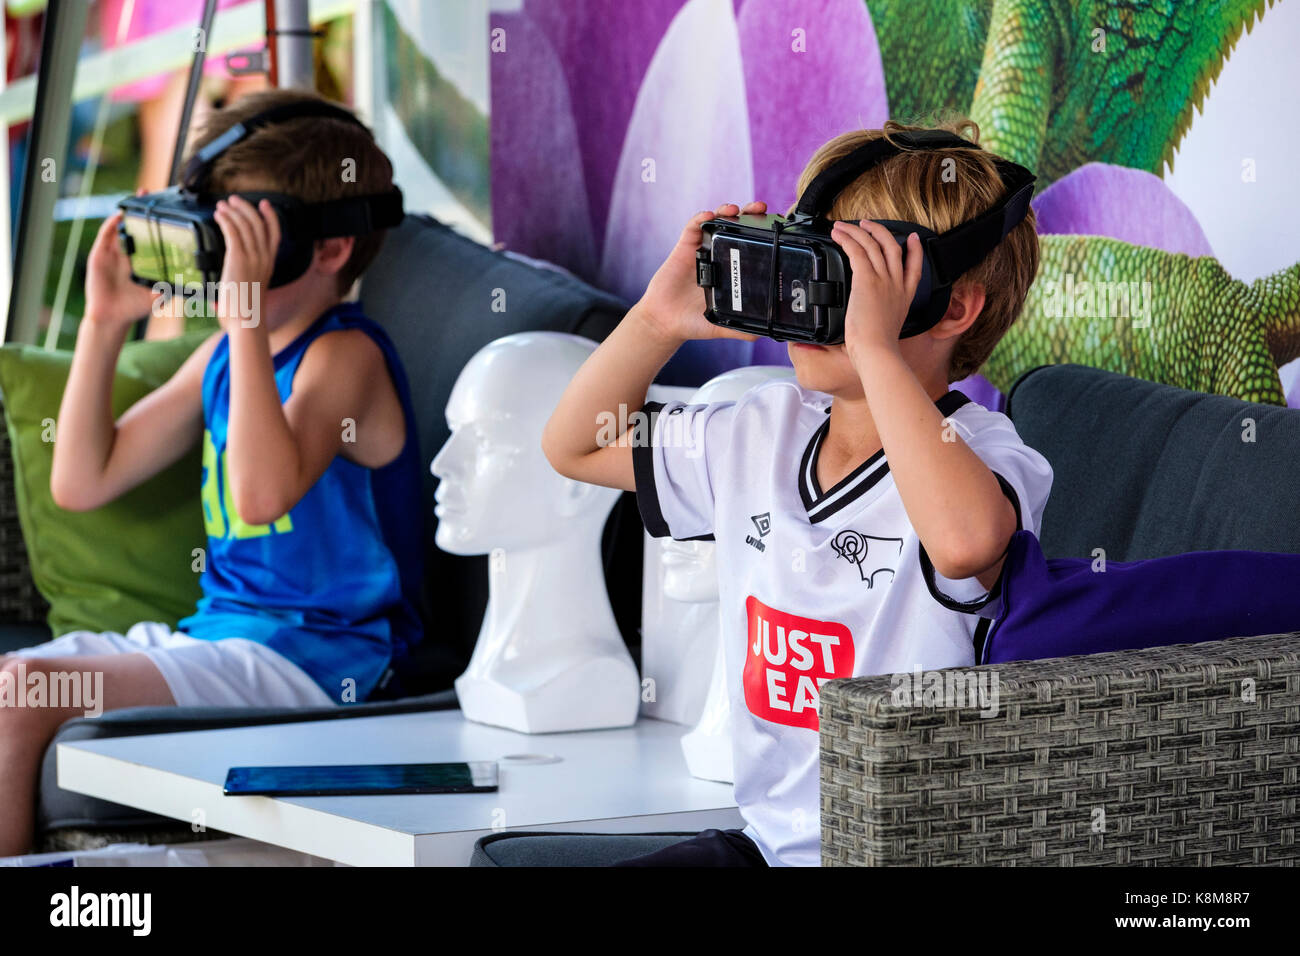 Junge Jungen mit Oculus Gear VR-Headset, Metaverse Virtual Reality (VR)-Ausrüstung mit Samsung-Handy an einem Telus Mobility-Stand. Stockfoto